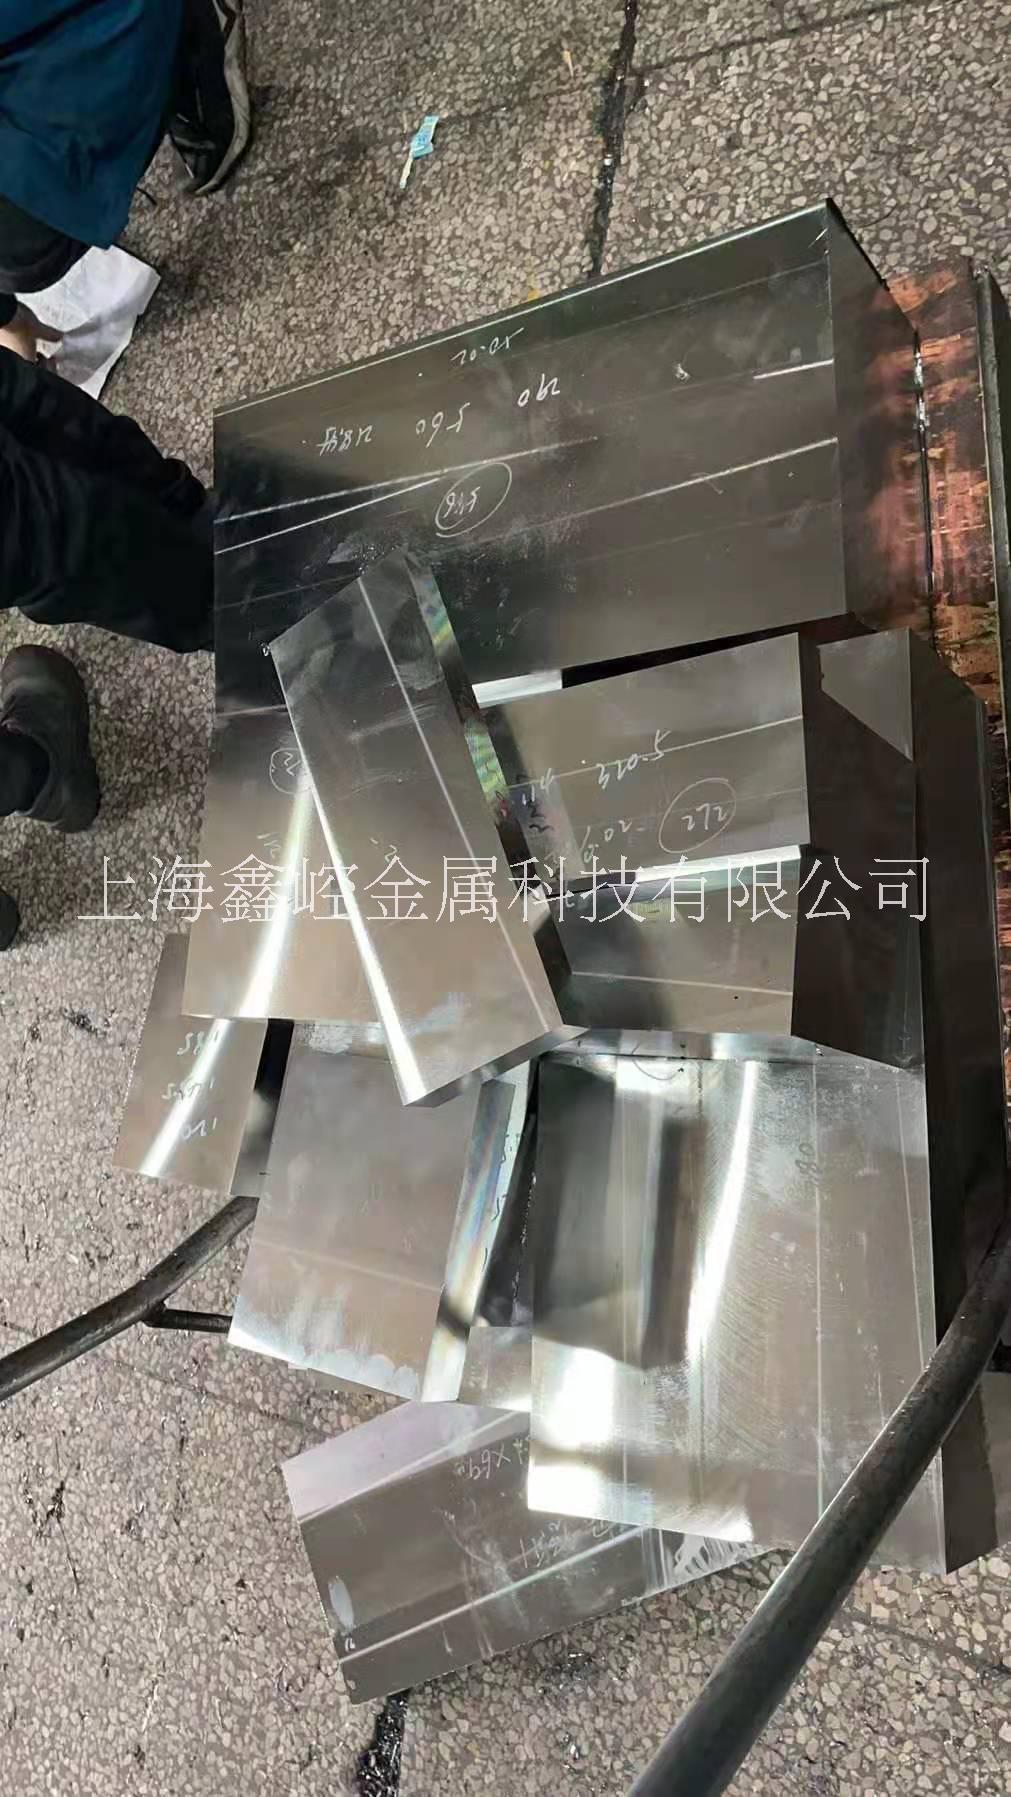 上海厂家批发零售各类模具材料 模具加工 模具定制